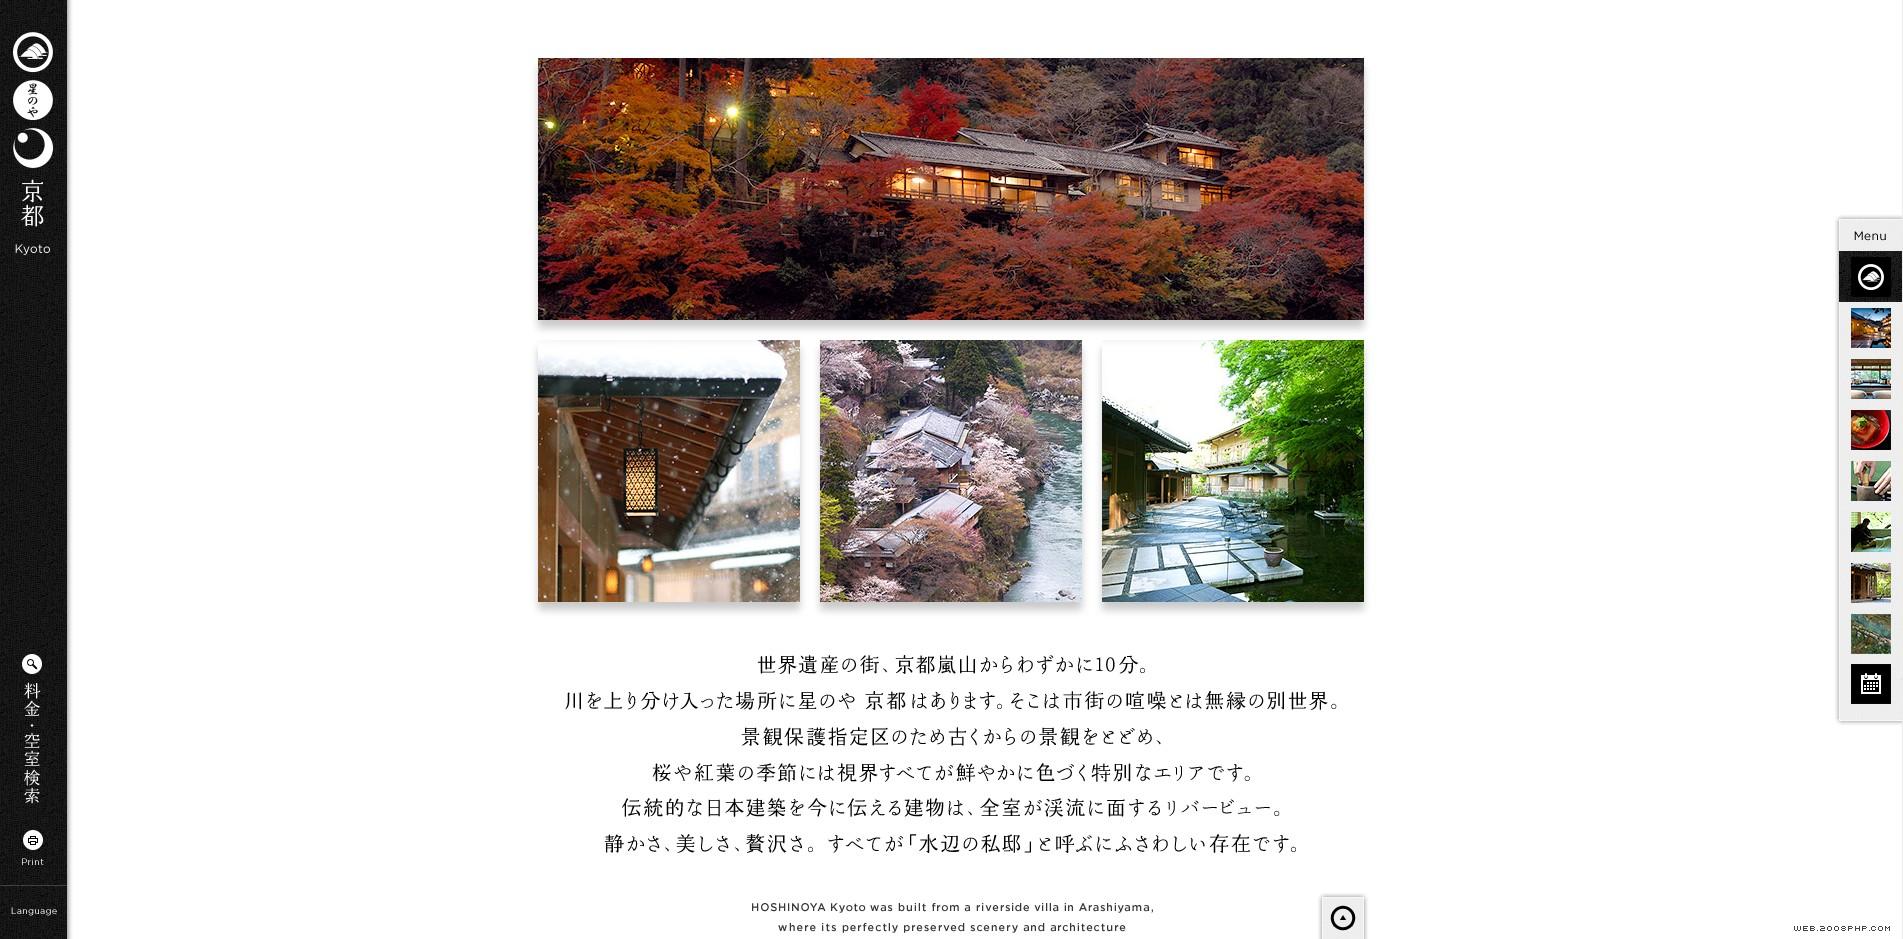 日本京都温泉旅馆住宅旅游网站。丰富的传统历